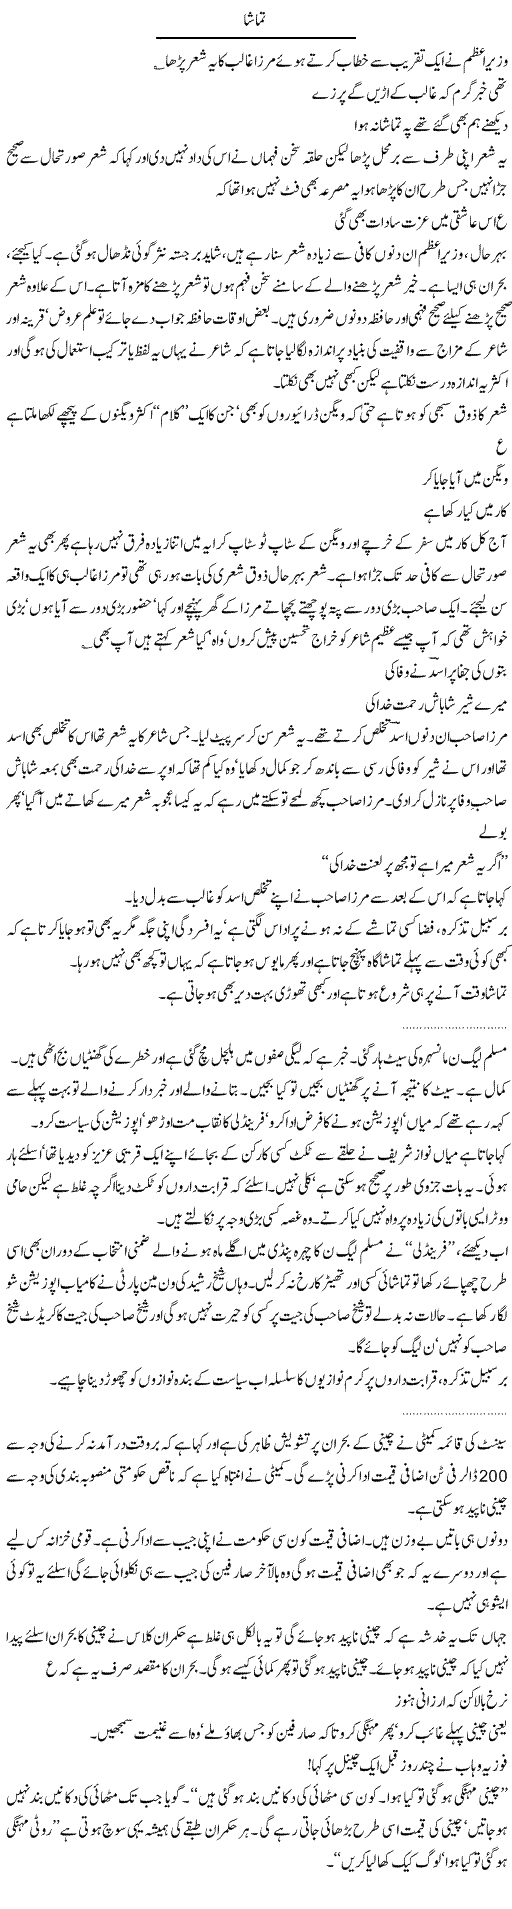 Tamasha Express Column Abdullah Tariq 1 Feb 2010